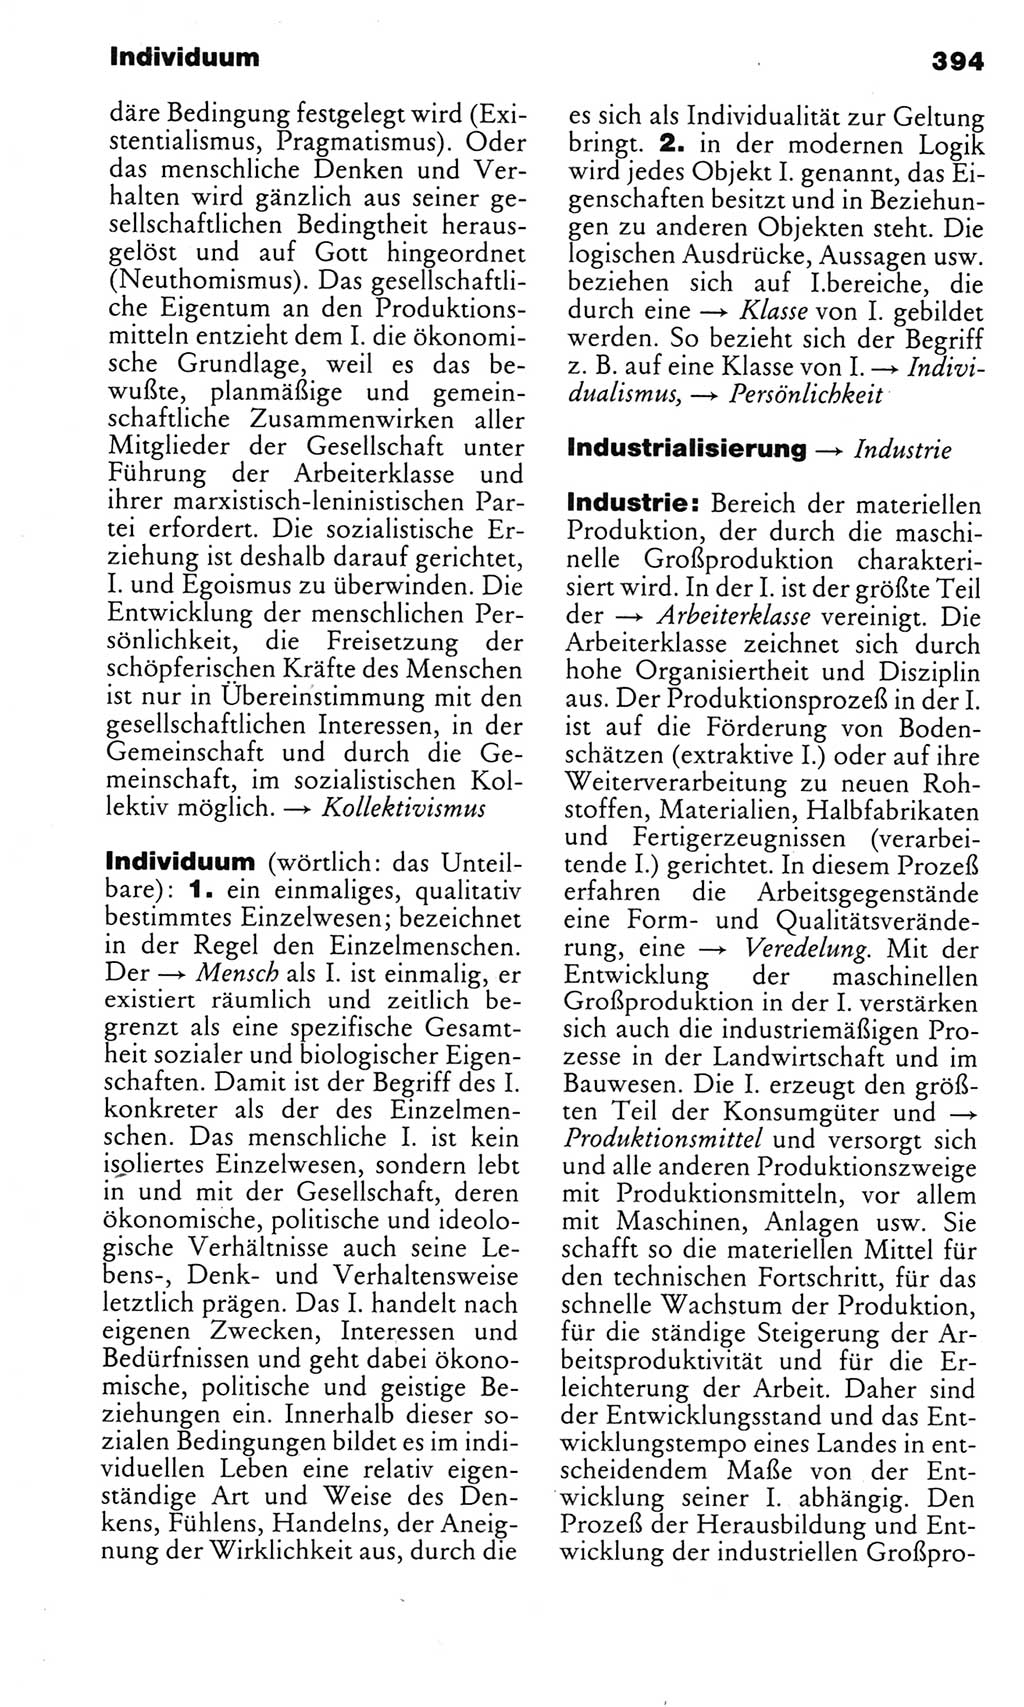 Kleines politisches Wörterbuch [Deutsche Demokratische Republik (DDR)] 1983, Seite 394 (Kl. pol. Wb. DDR 1983, S. 394)